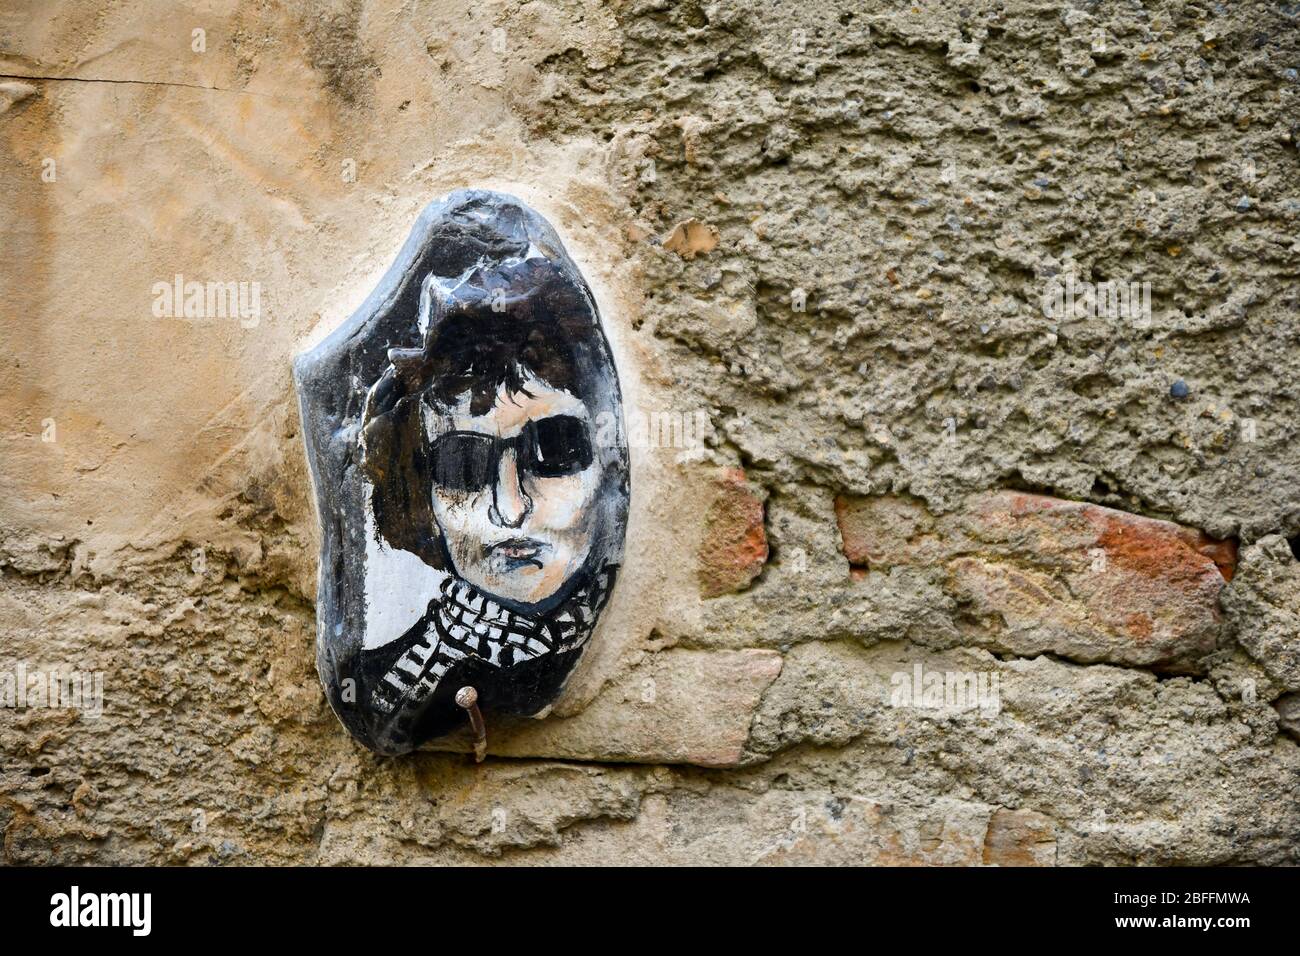 Primo piano di una pietra dipinta a mano con il ritratto di Bob Dylan, cantautore americano, su un vecchio muro, Bussana Vecchia, Imperia, Liguria, Italia Foto Stock